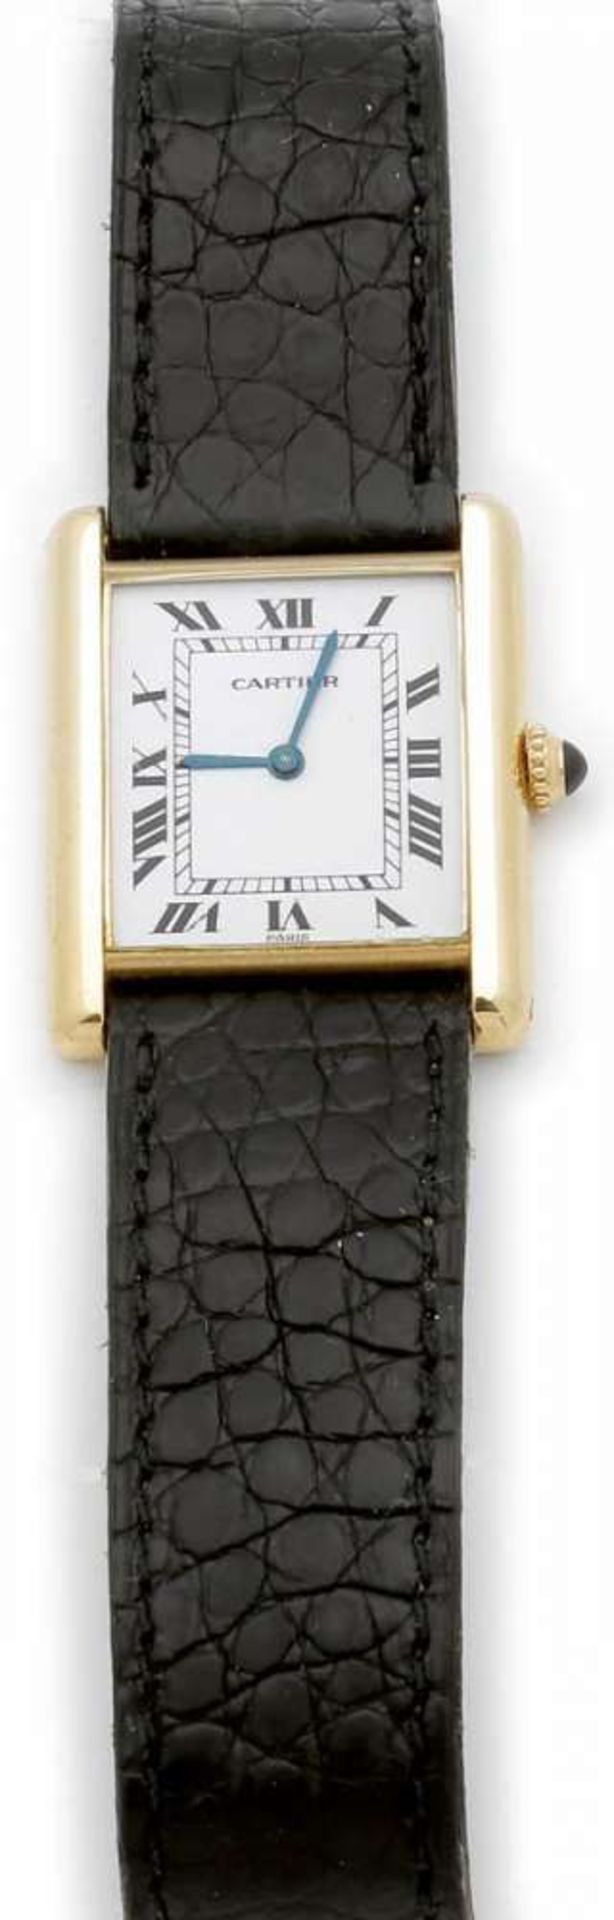 Cartier-Armbanduhr Fa. Cartier, Schweiz. Modell: Tank Louis Cartier. 750er GG, gestemp. Saphir. - Bild 2 aus 2